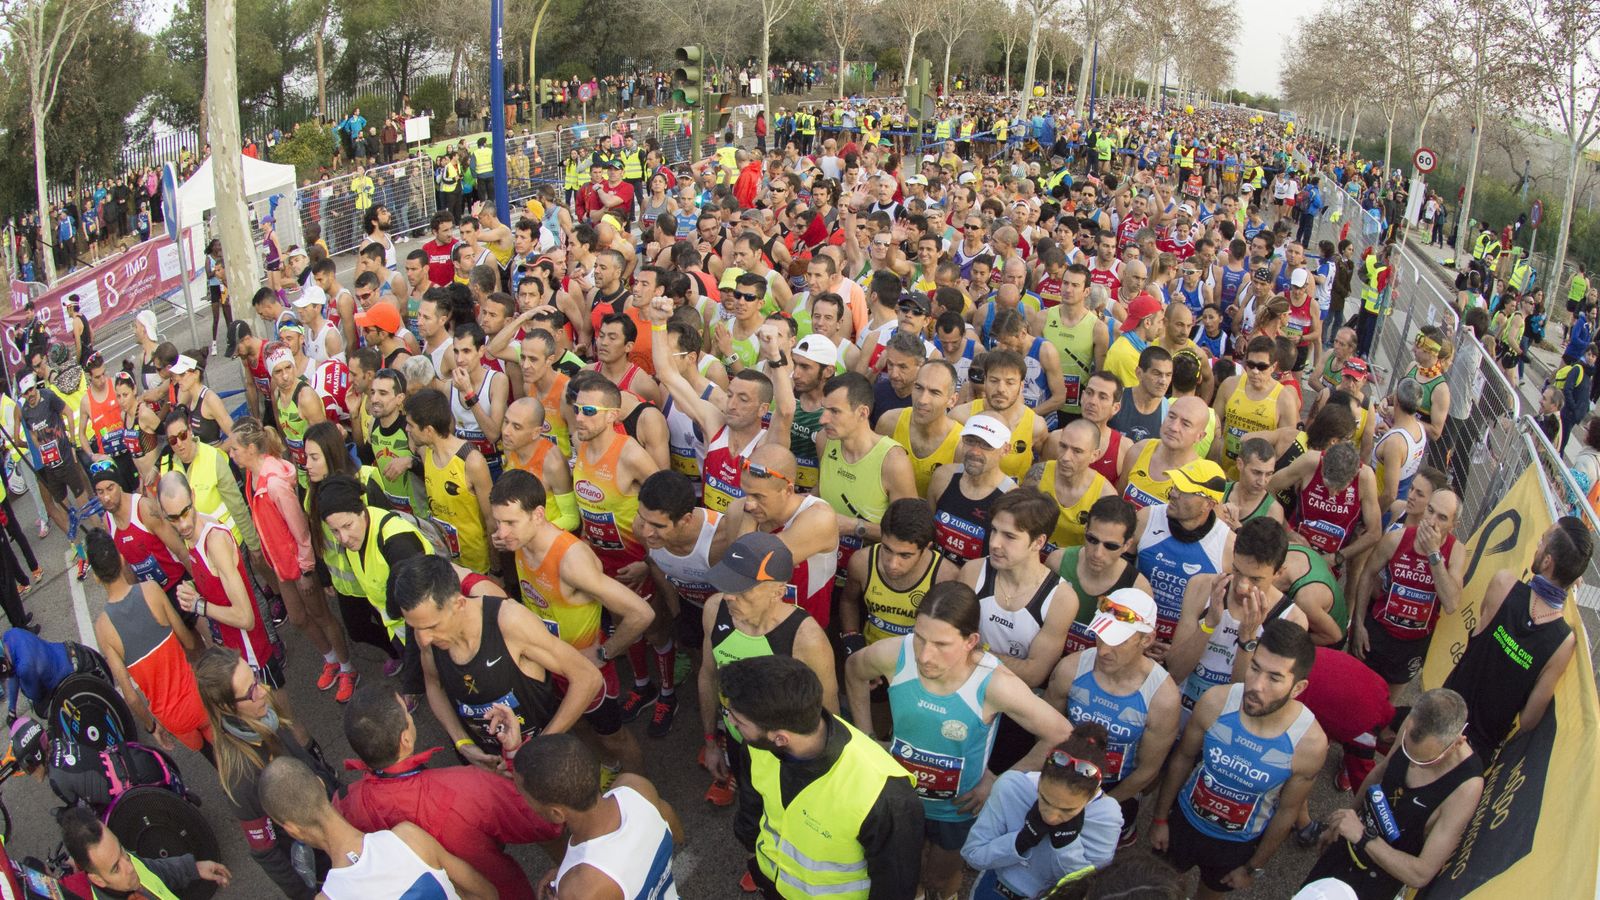 Foto: Una maratón pone al límite la resistente del atleta (EFE)